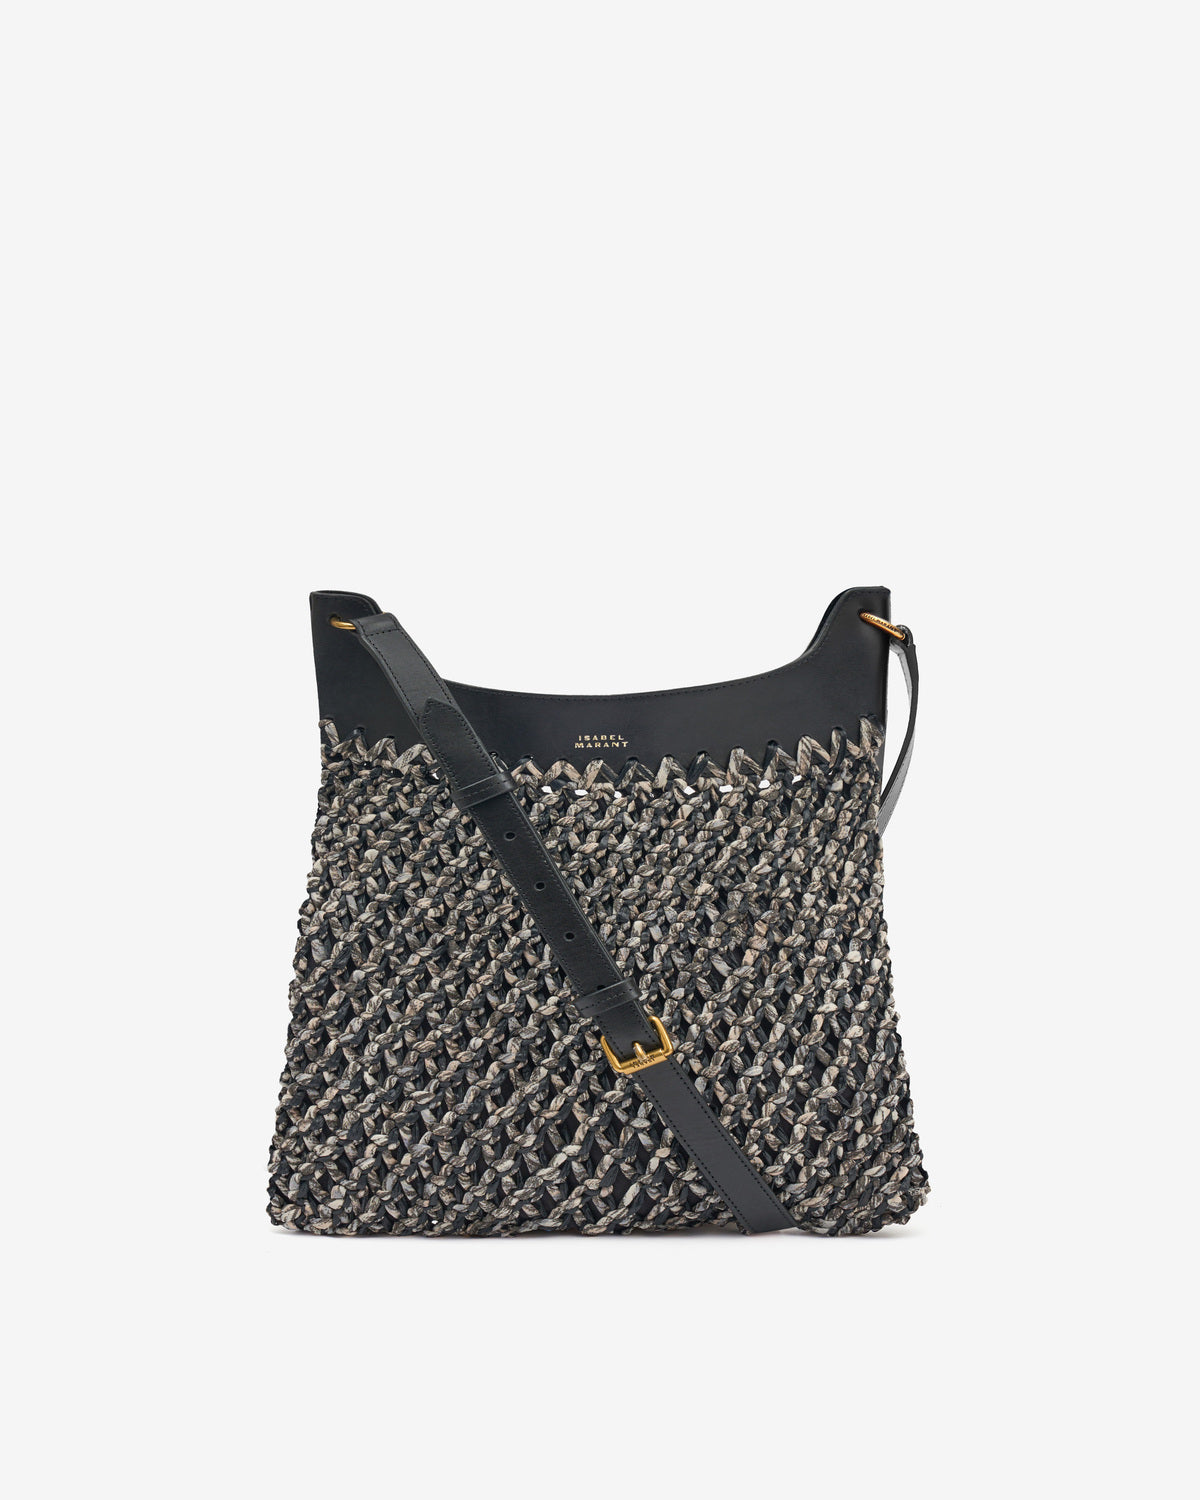 Amalfi bag Woman Black 1